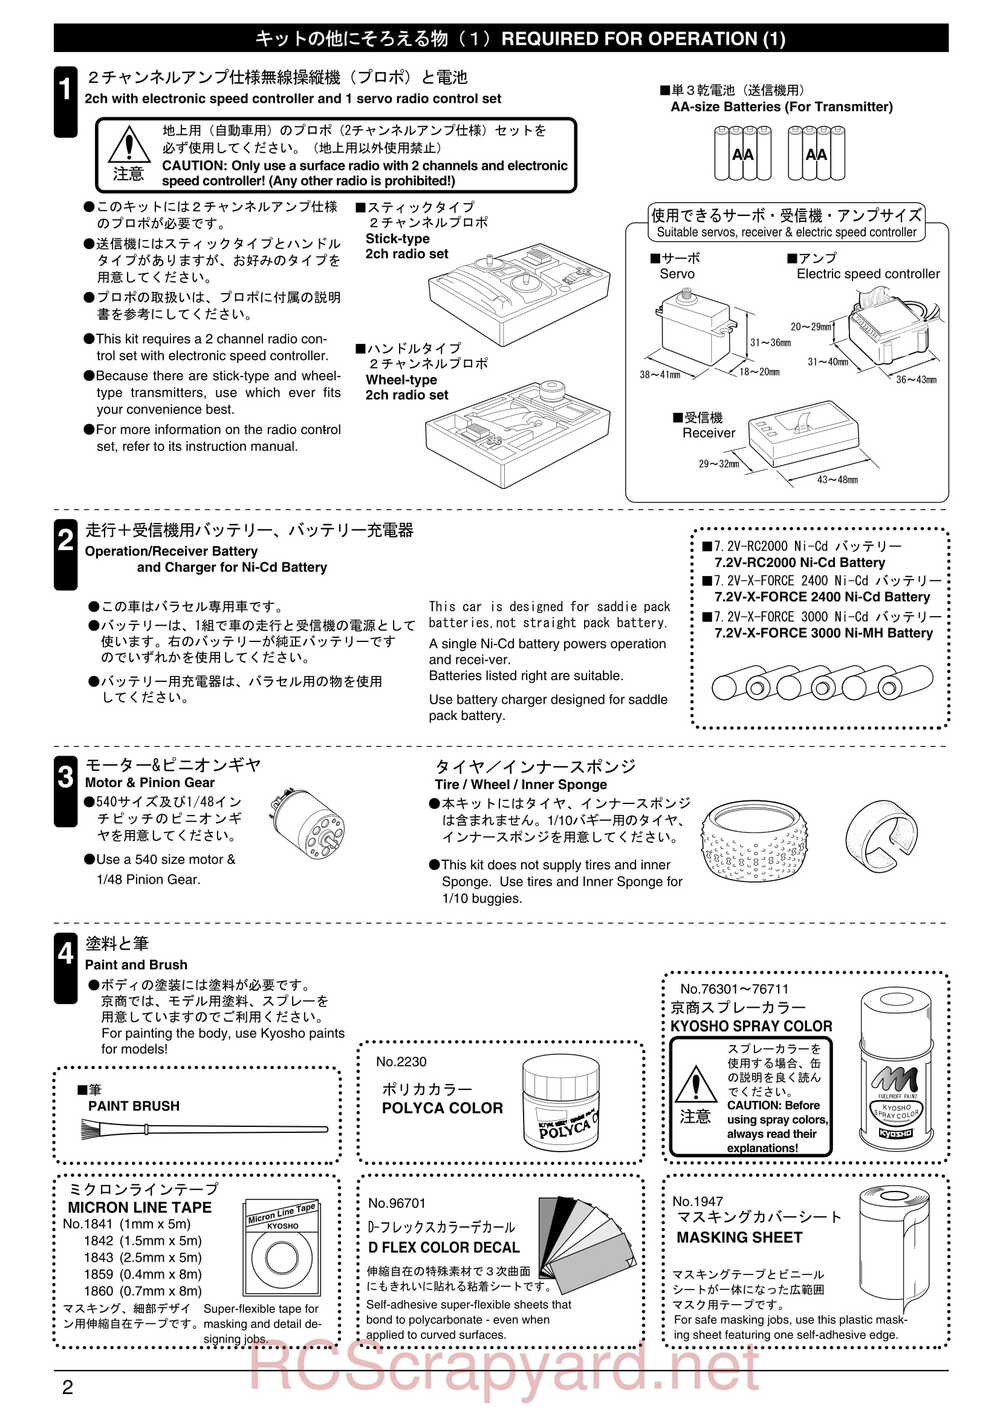 Kyosho - 30075 - Lazer-ZX-S-Evo - Manual - Page 02